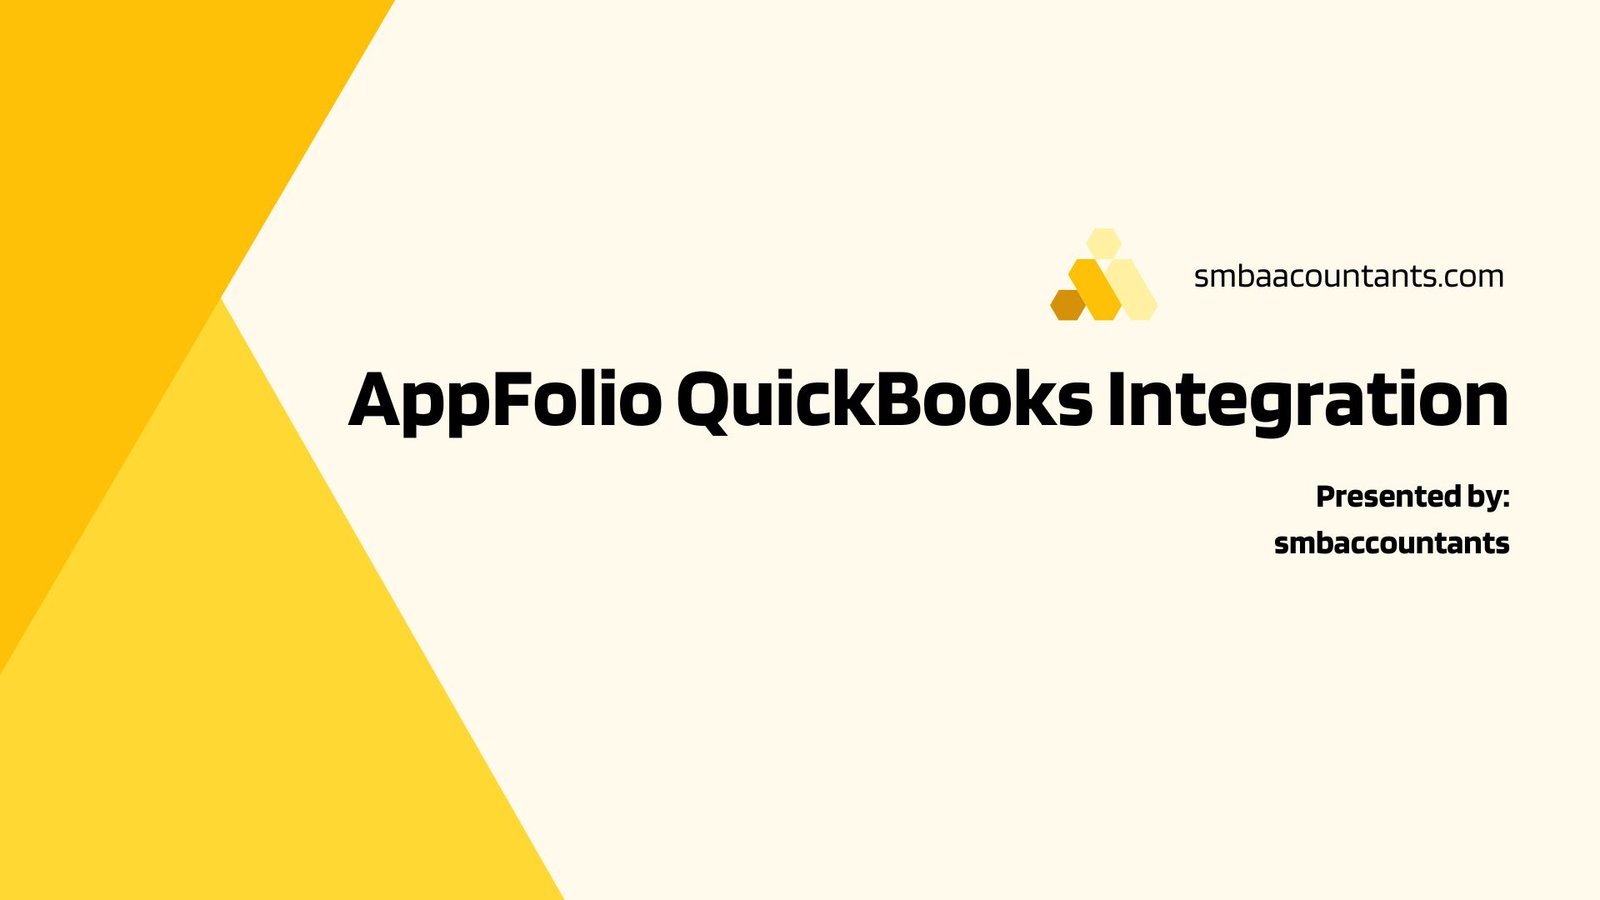 AppFolio QuickBooks Integration